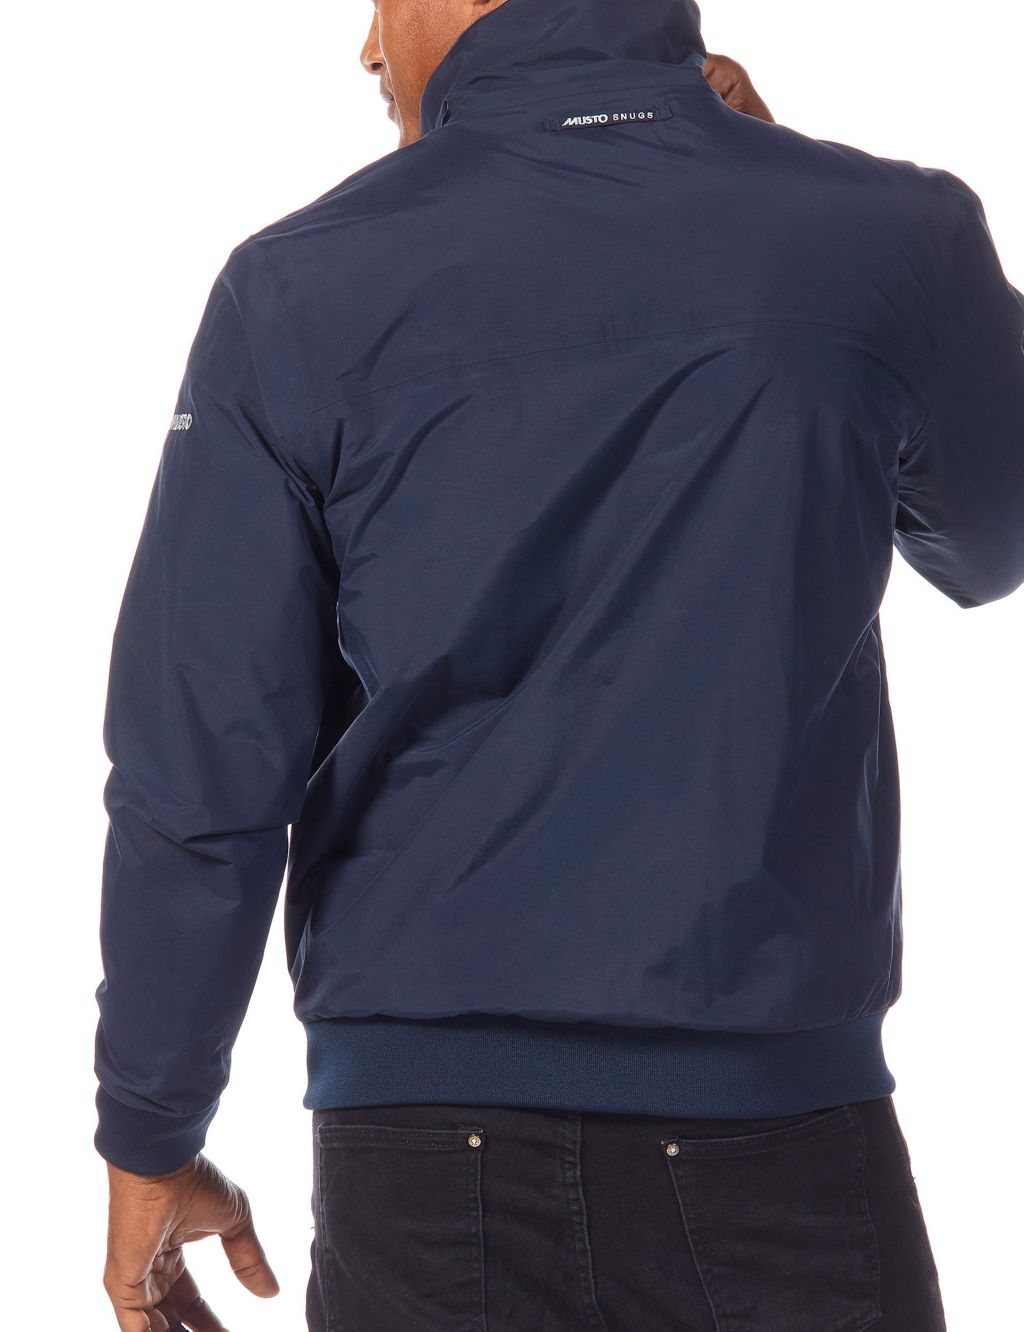 Snug Fleece Lined Jacket image 4